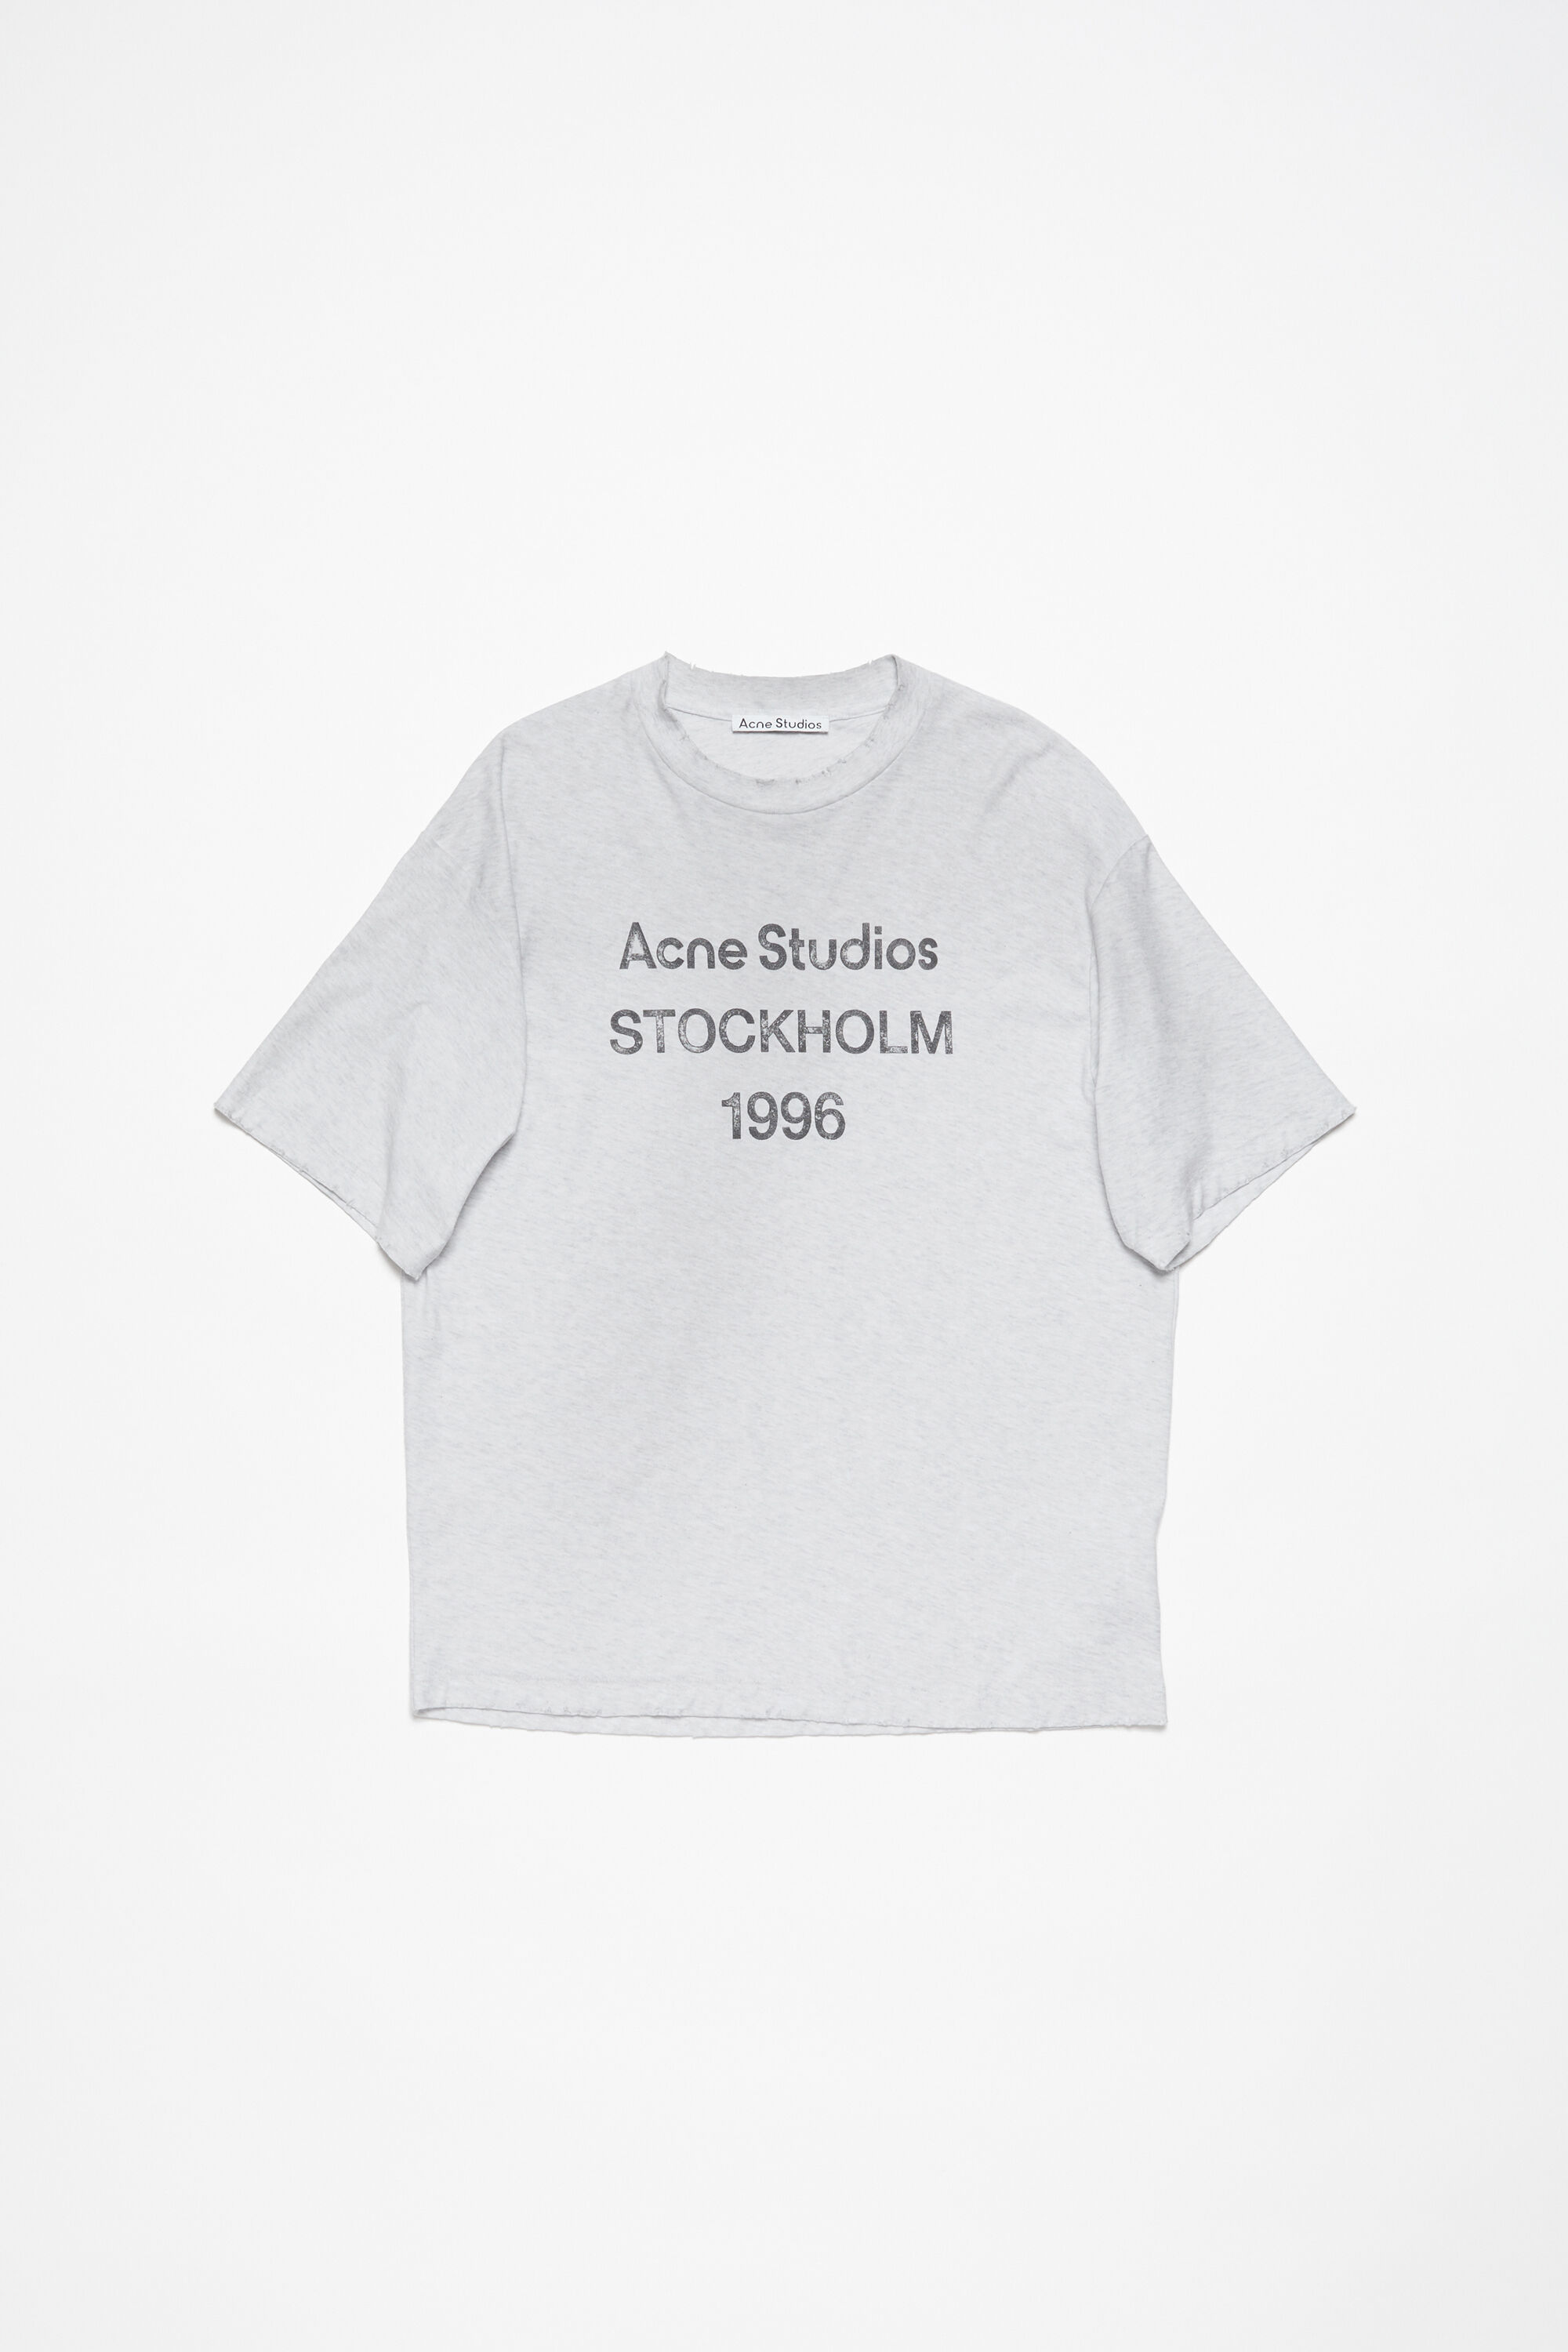 真剣に購入を考えてるのですがAcne Studios Stockholm 1996 T-shirt blue